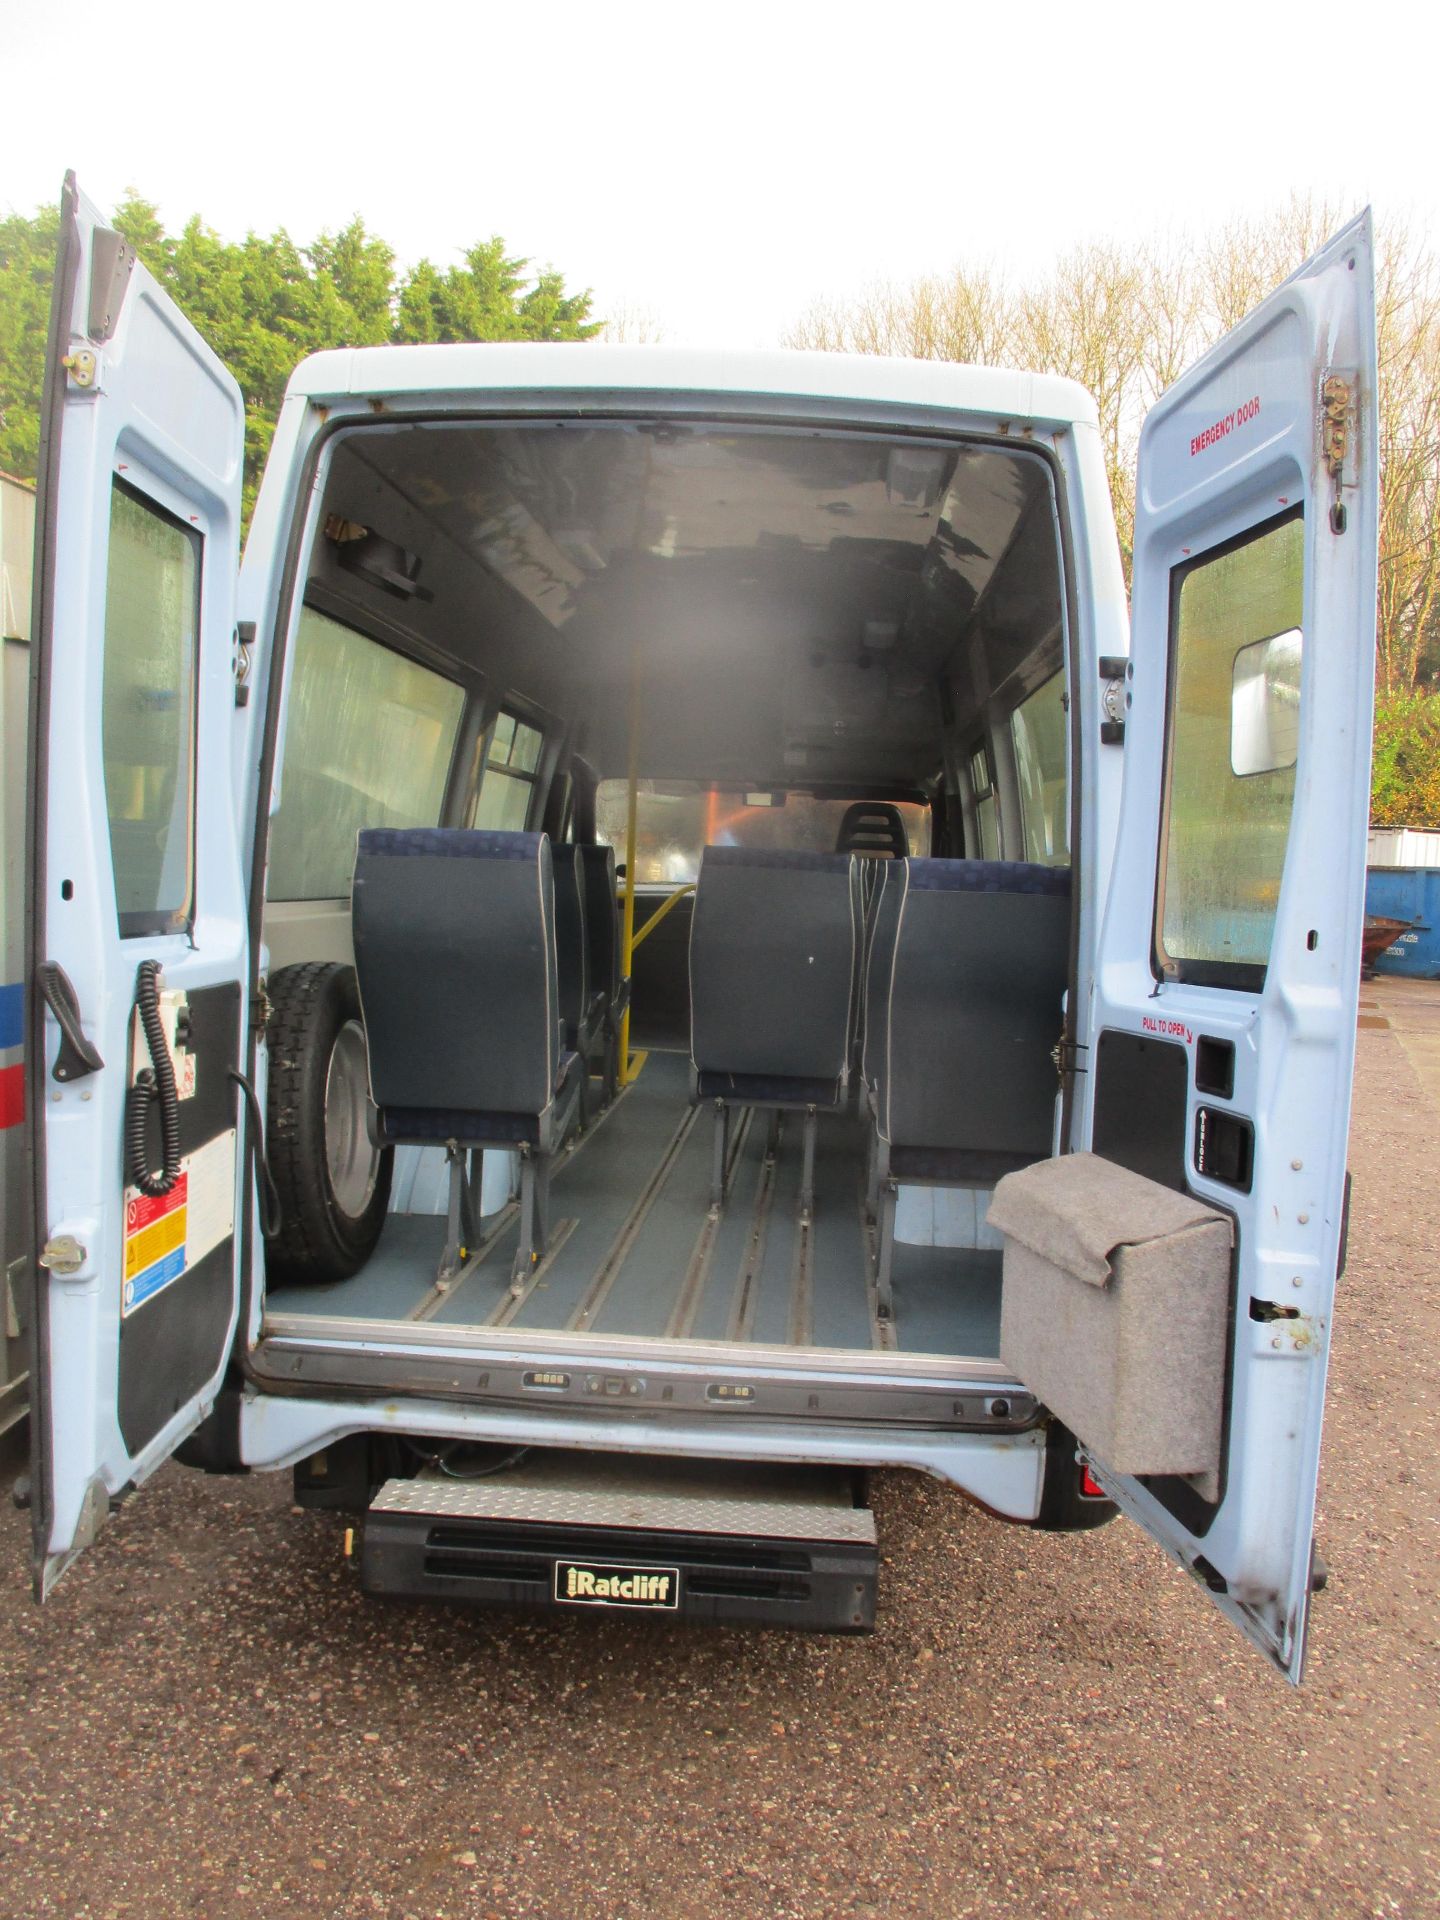 05/55 IVECO DAILY 40C12 - 2300cc Minibus (Blue, 38k) - Image 3 of 7